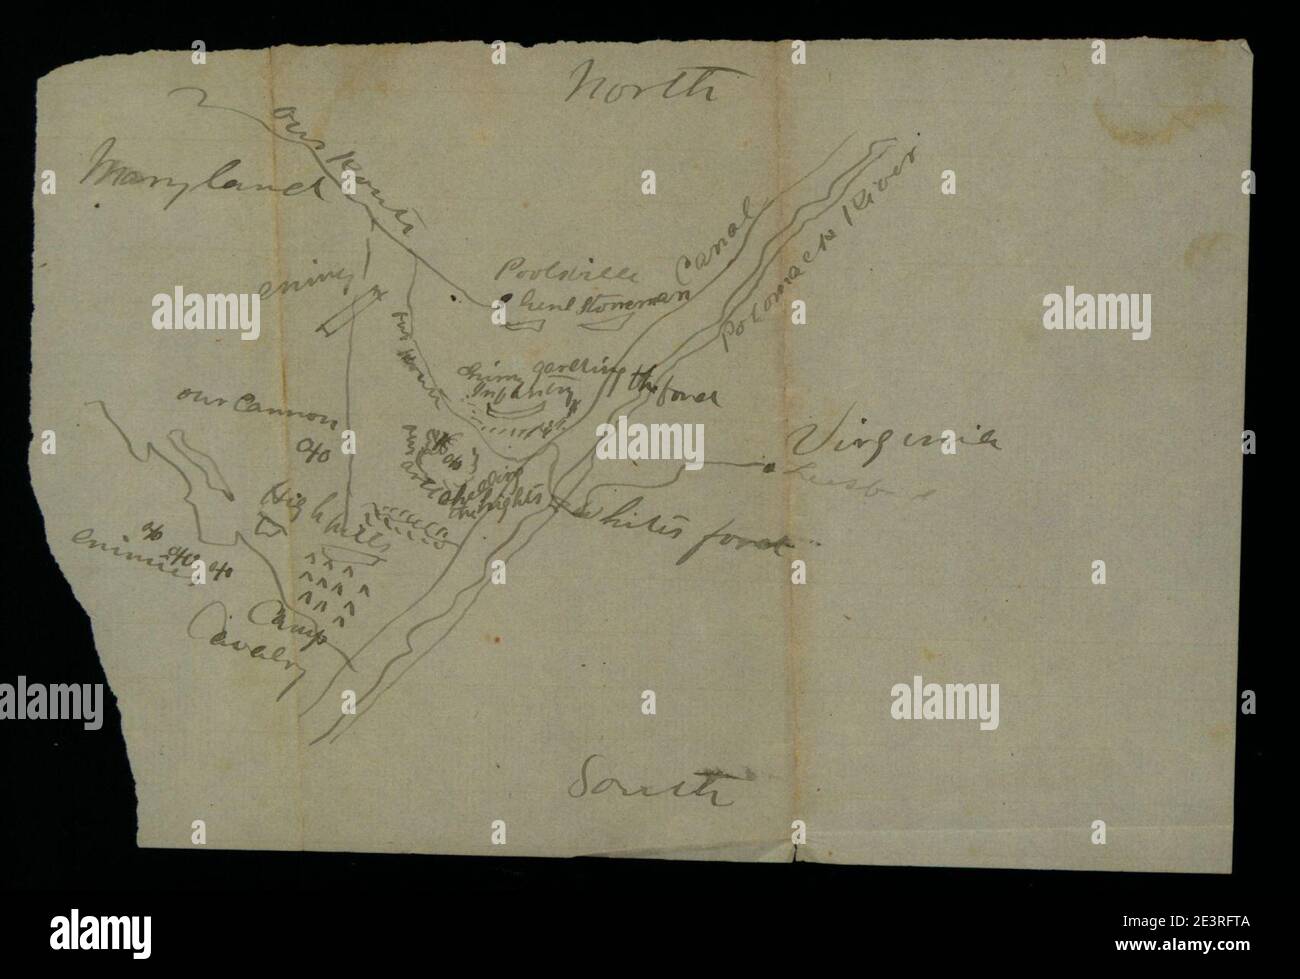 Karte einer Kavallerie-Verlobung in der Nähe von Poolesville, MD., 1862. Stockfoto